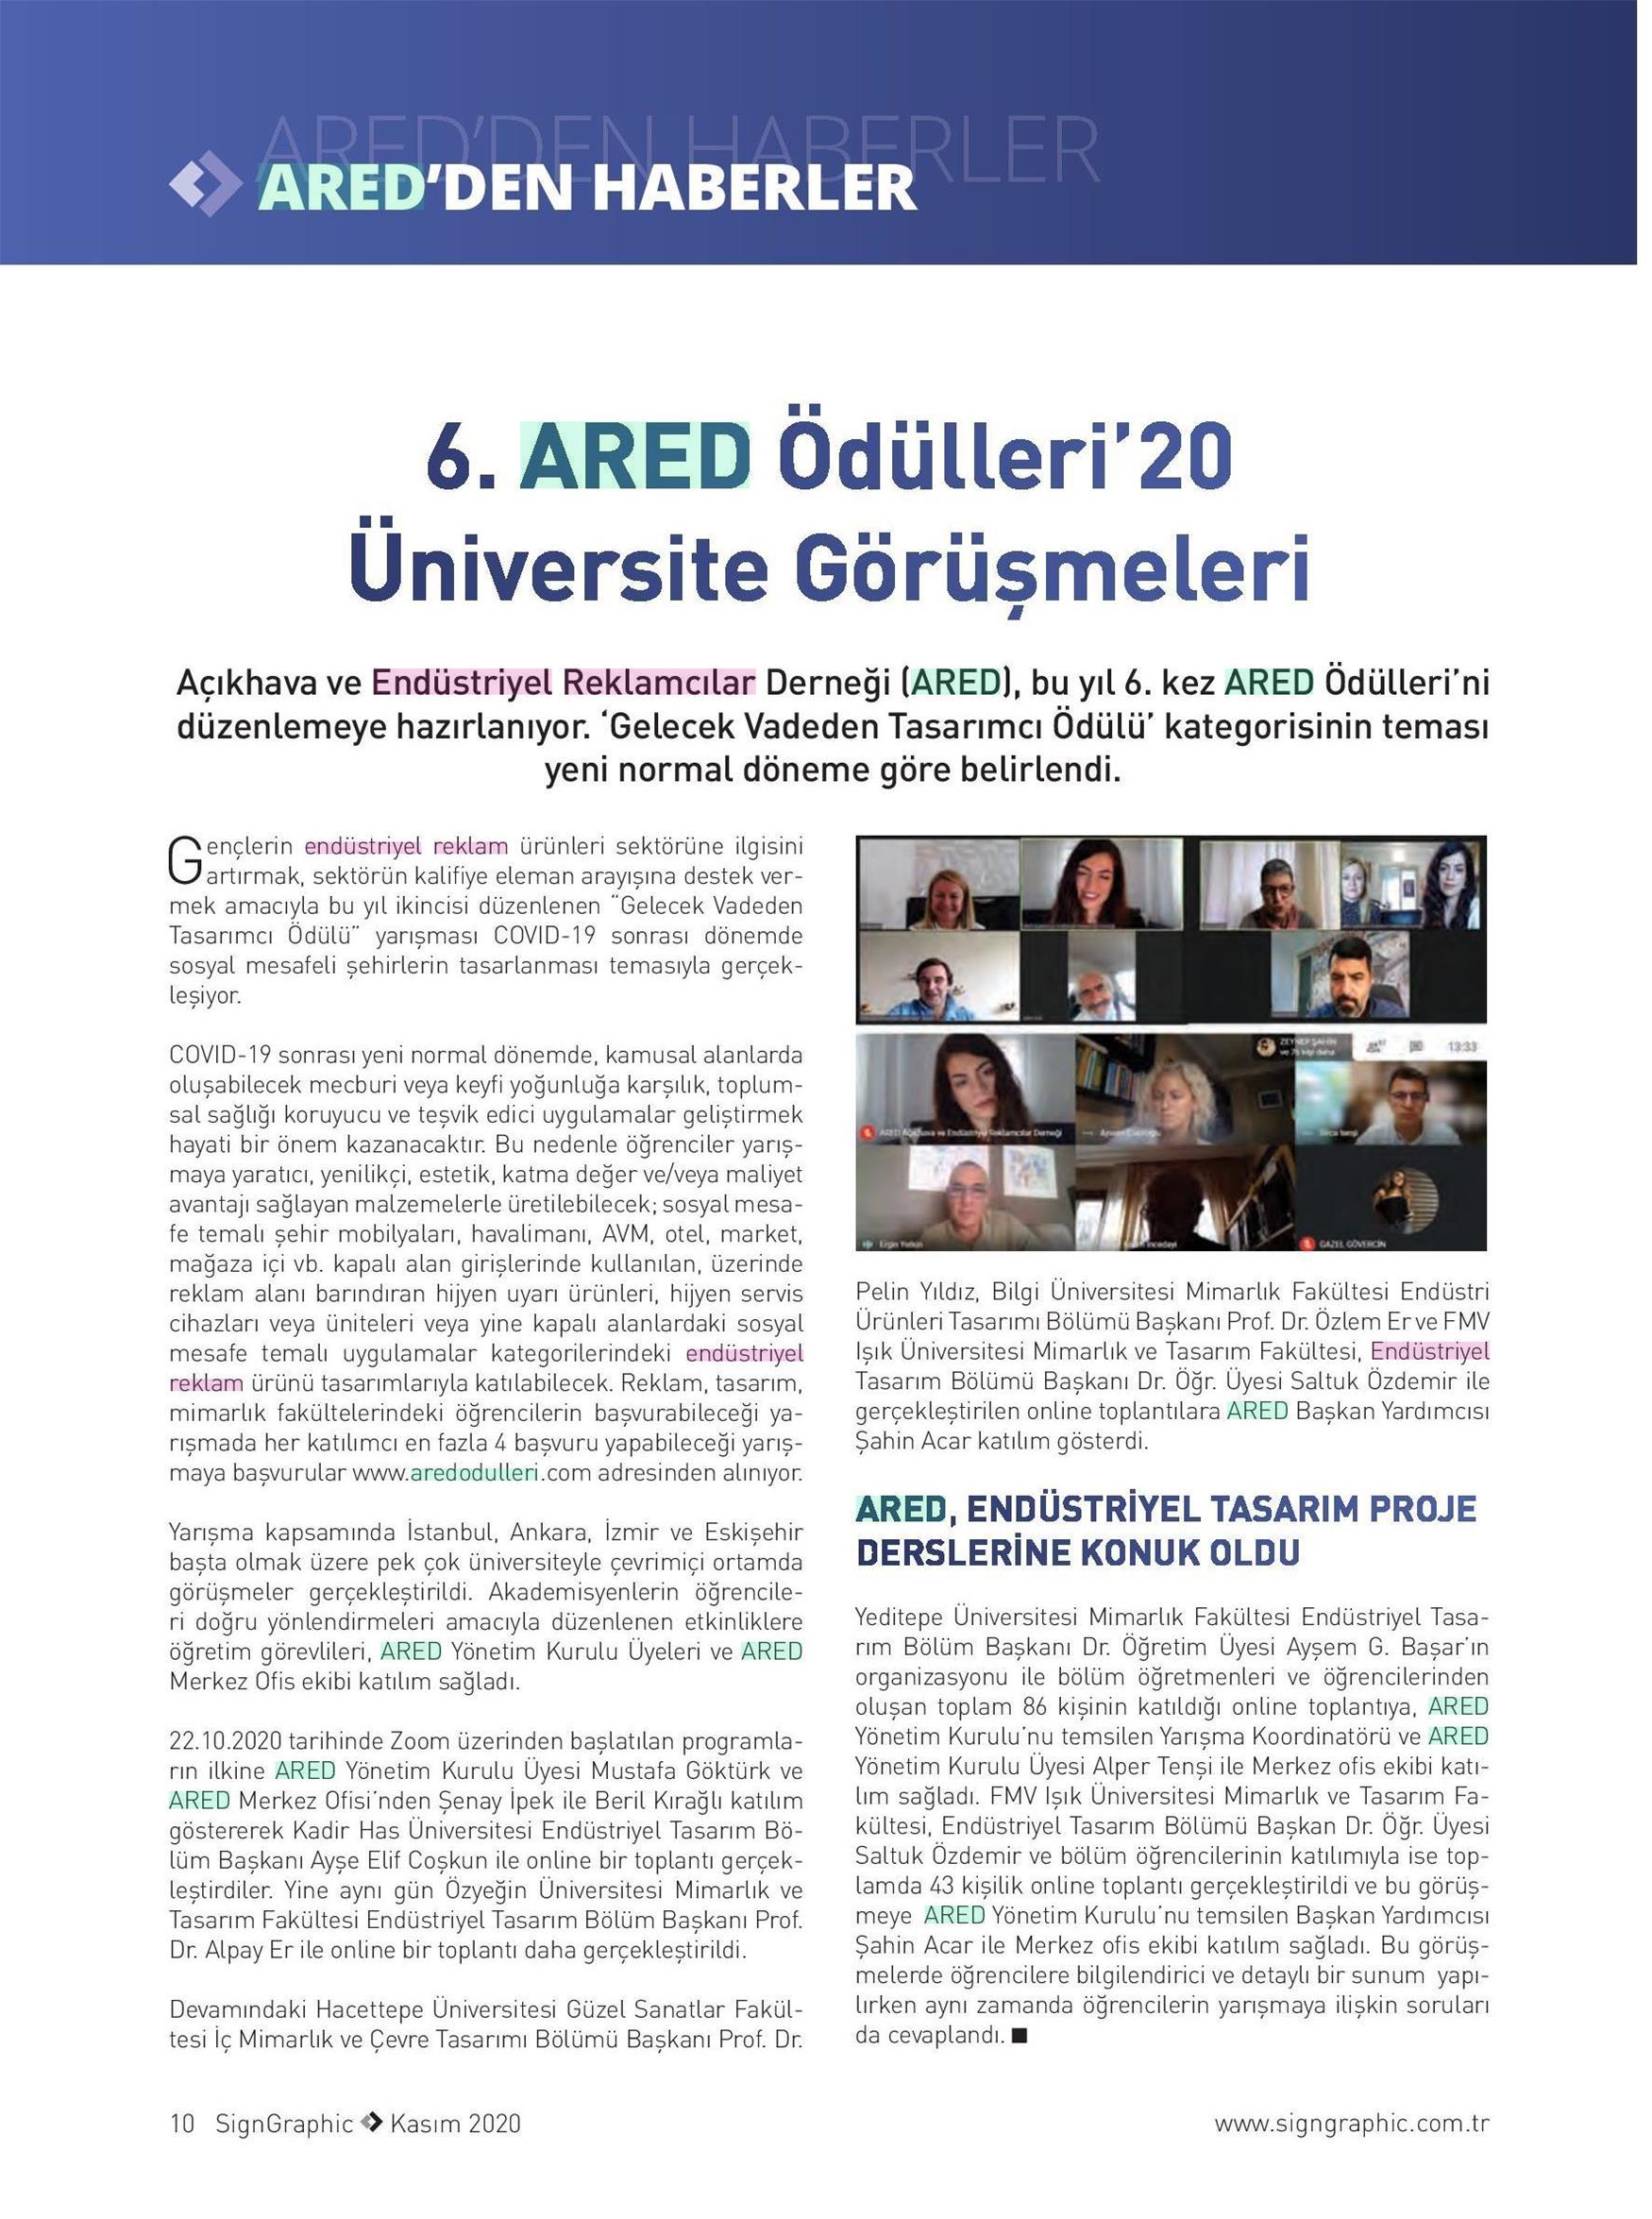 6. ARED Ödülleri’20 Üniversite görüşmeleri